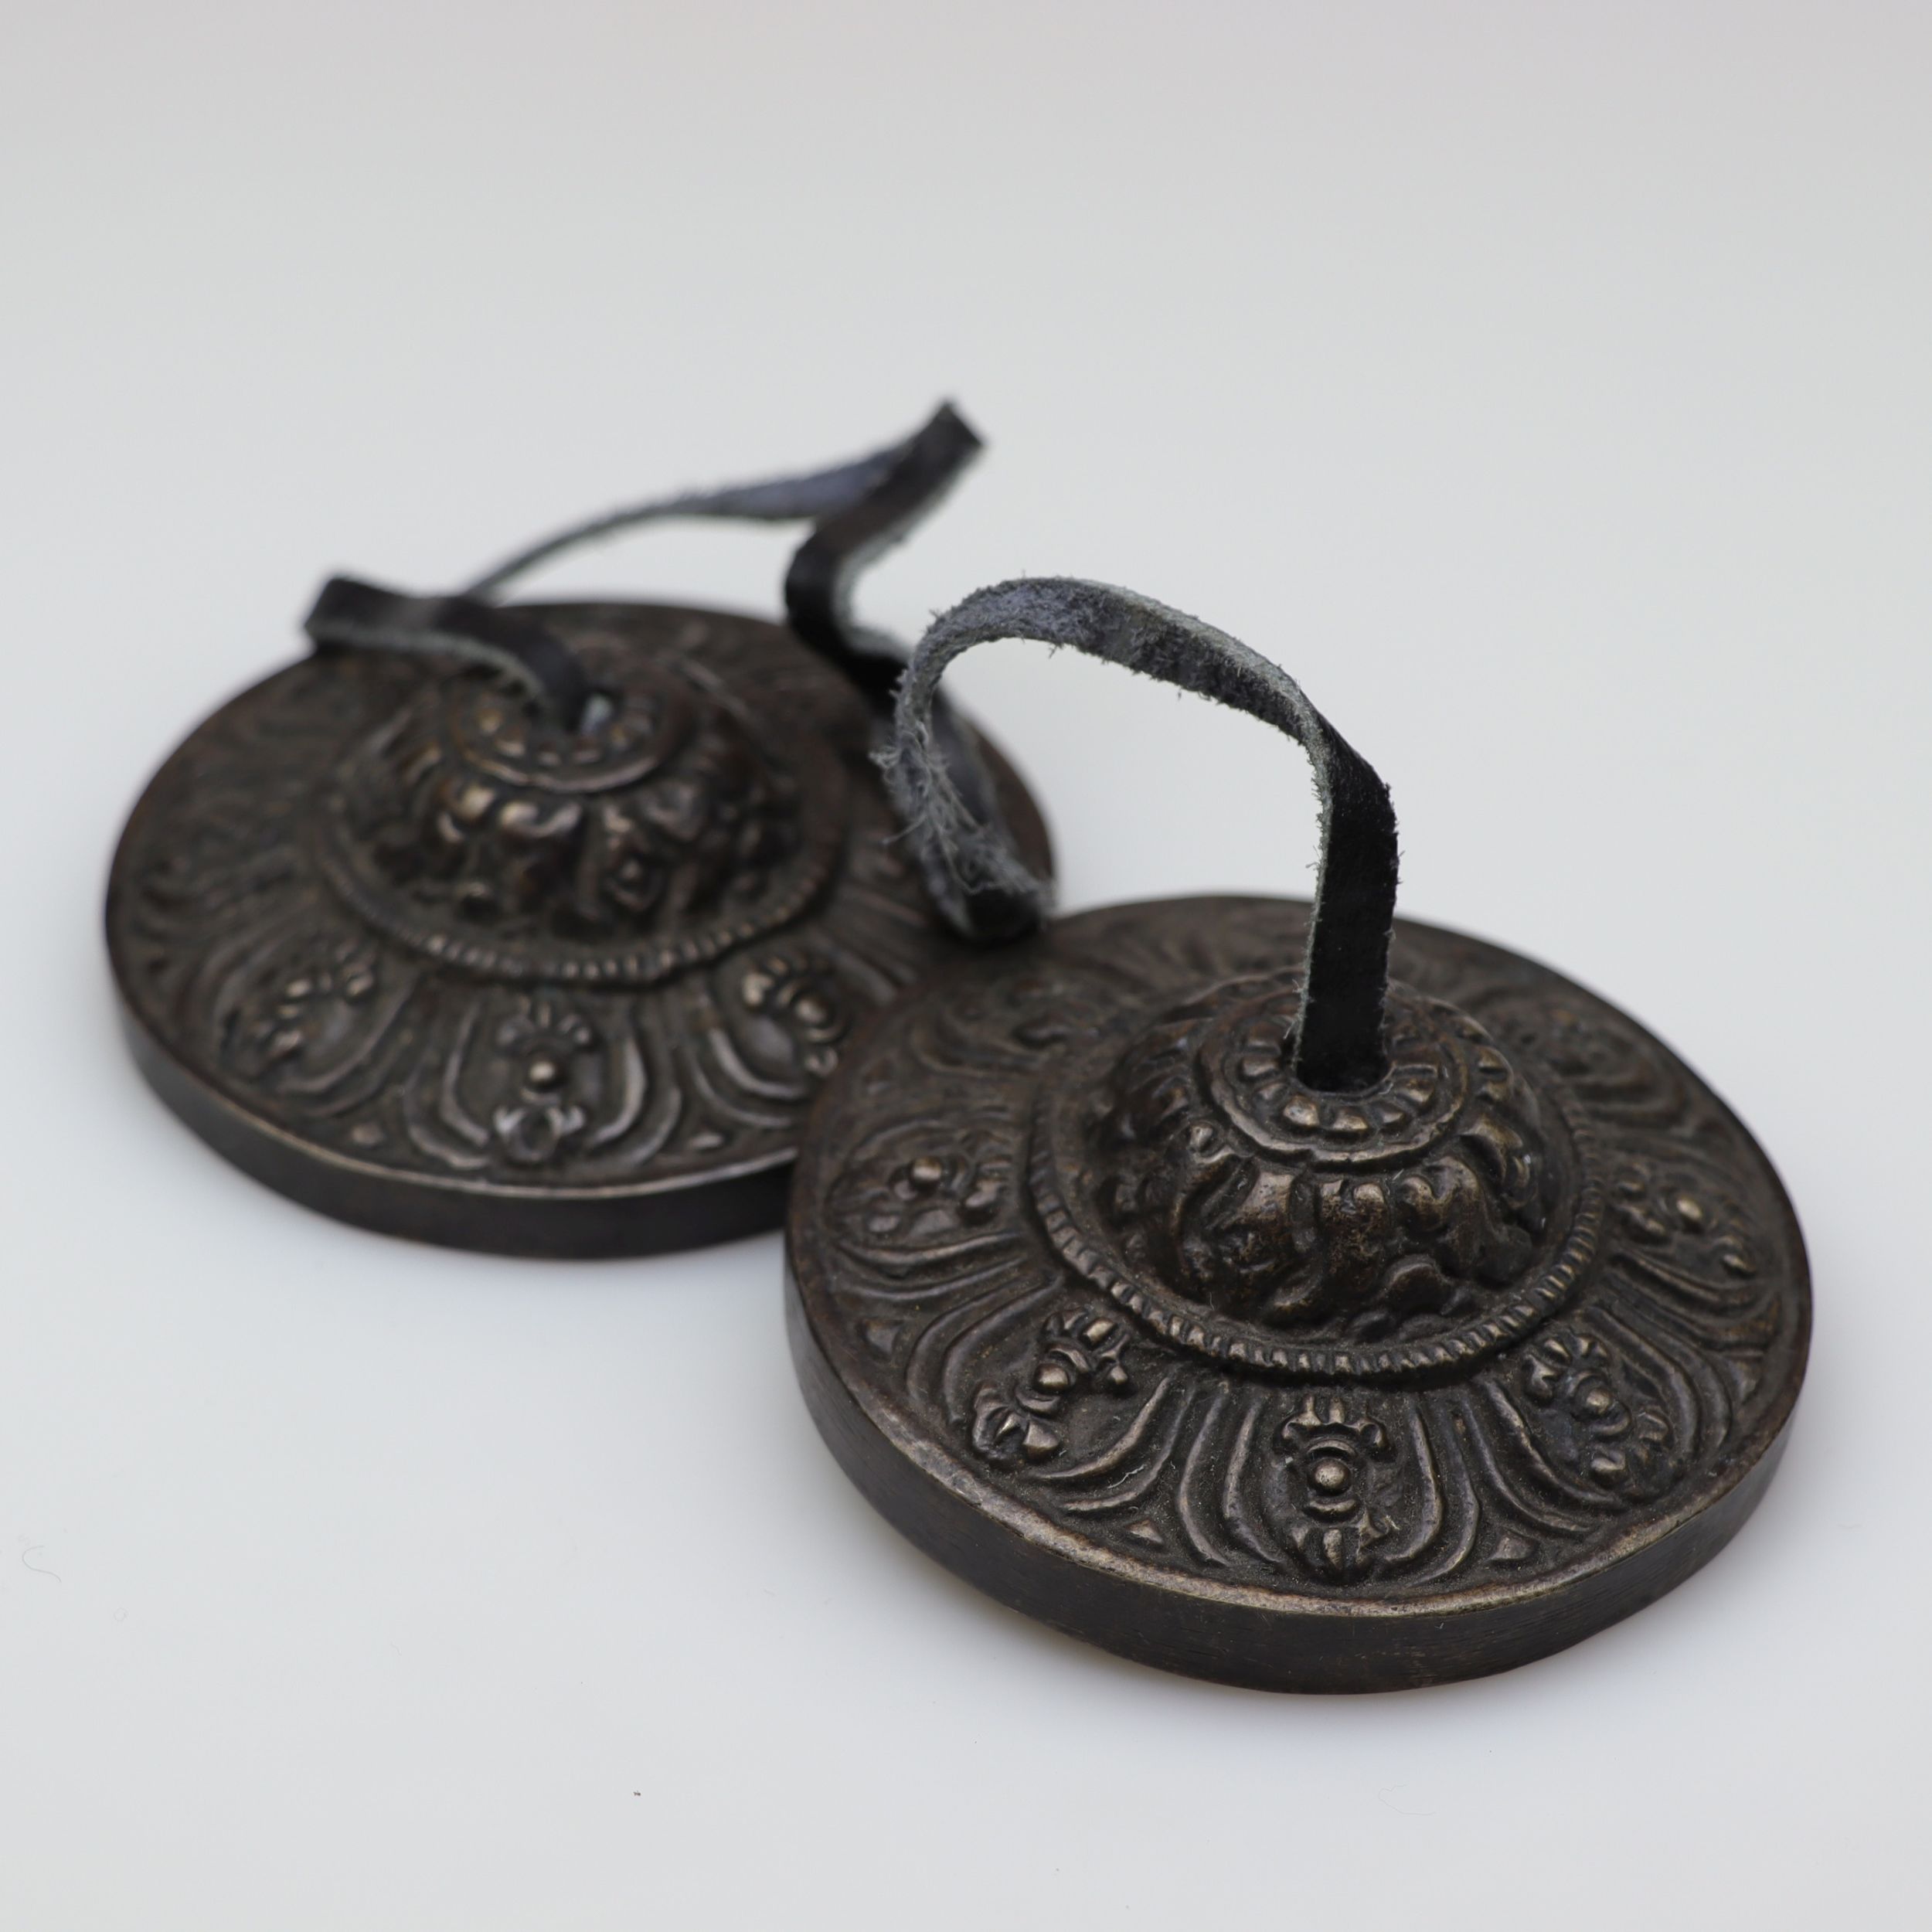 Zimbeln aus Bronze - Dorje - ca. 250g Handzimbeln für Deine Klangreise - Ø ca. 7 cm - magische, reinigende und klare Schwingungen für Deine Meditation, Alltagsrituale oder Phantasiereisen - Fair gehandelt aus Nepal